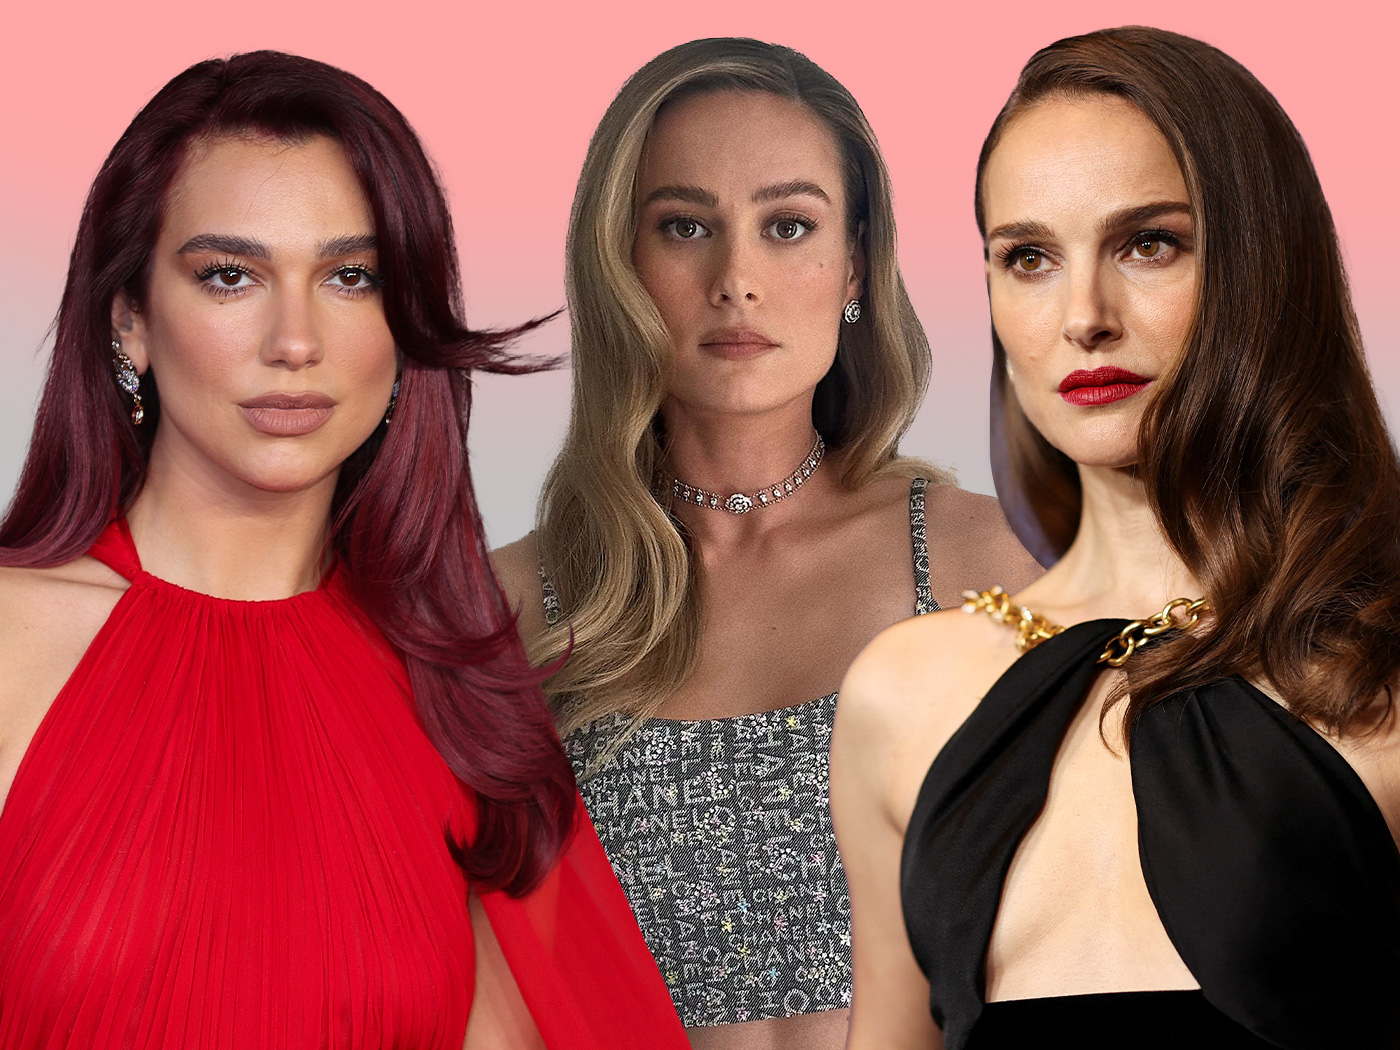 Χωρίστρα στο πλάι: Οι celebrtities στο κόκκινο χαλί δημιούργησαν τη νέα τάση στα μαλλιά